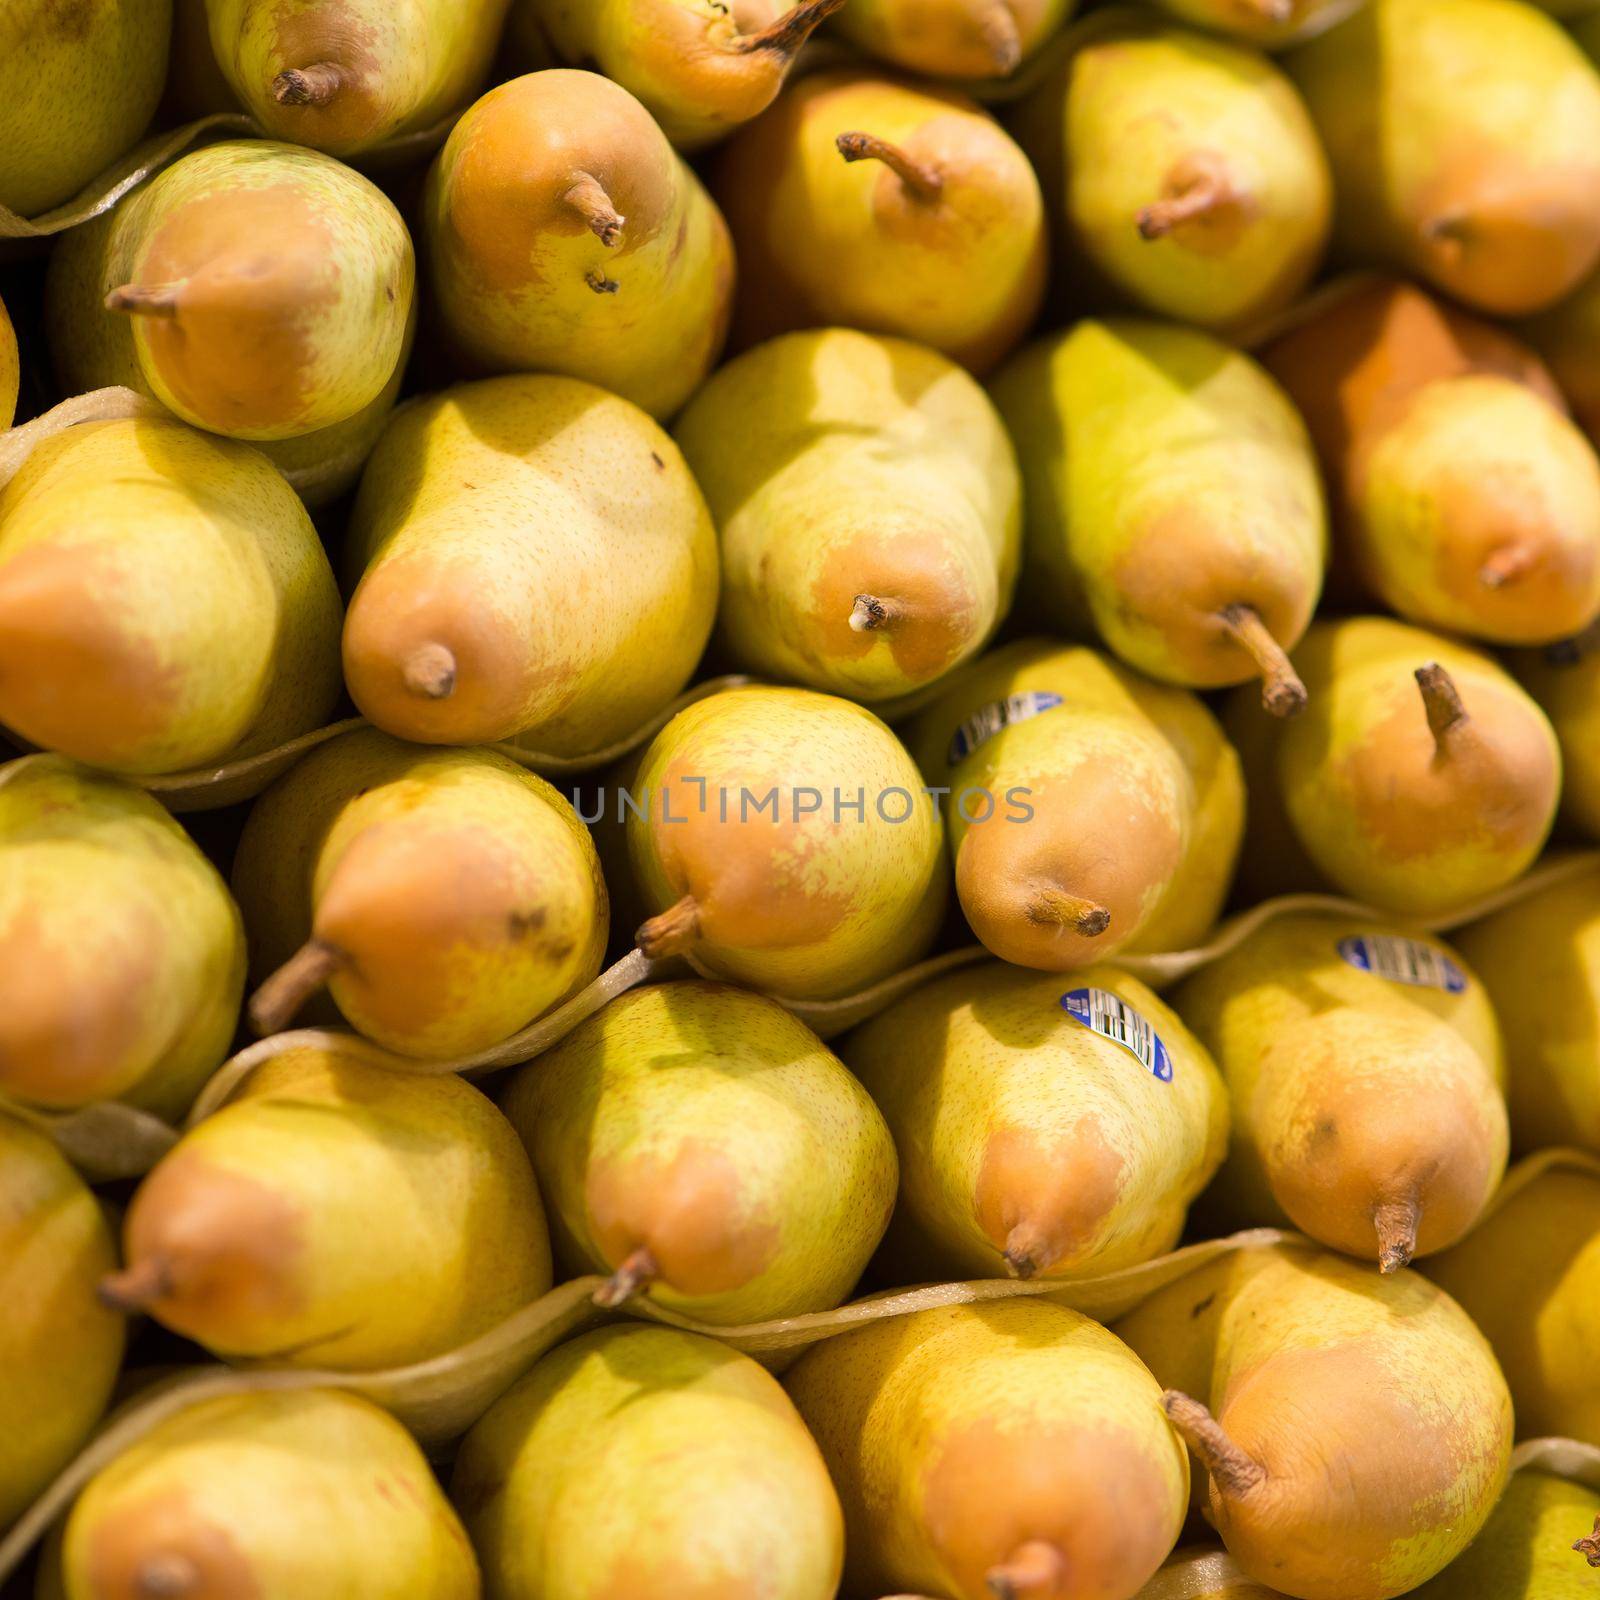 Pears at La Boqueria market in Barcelona